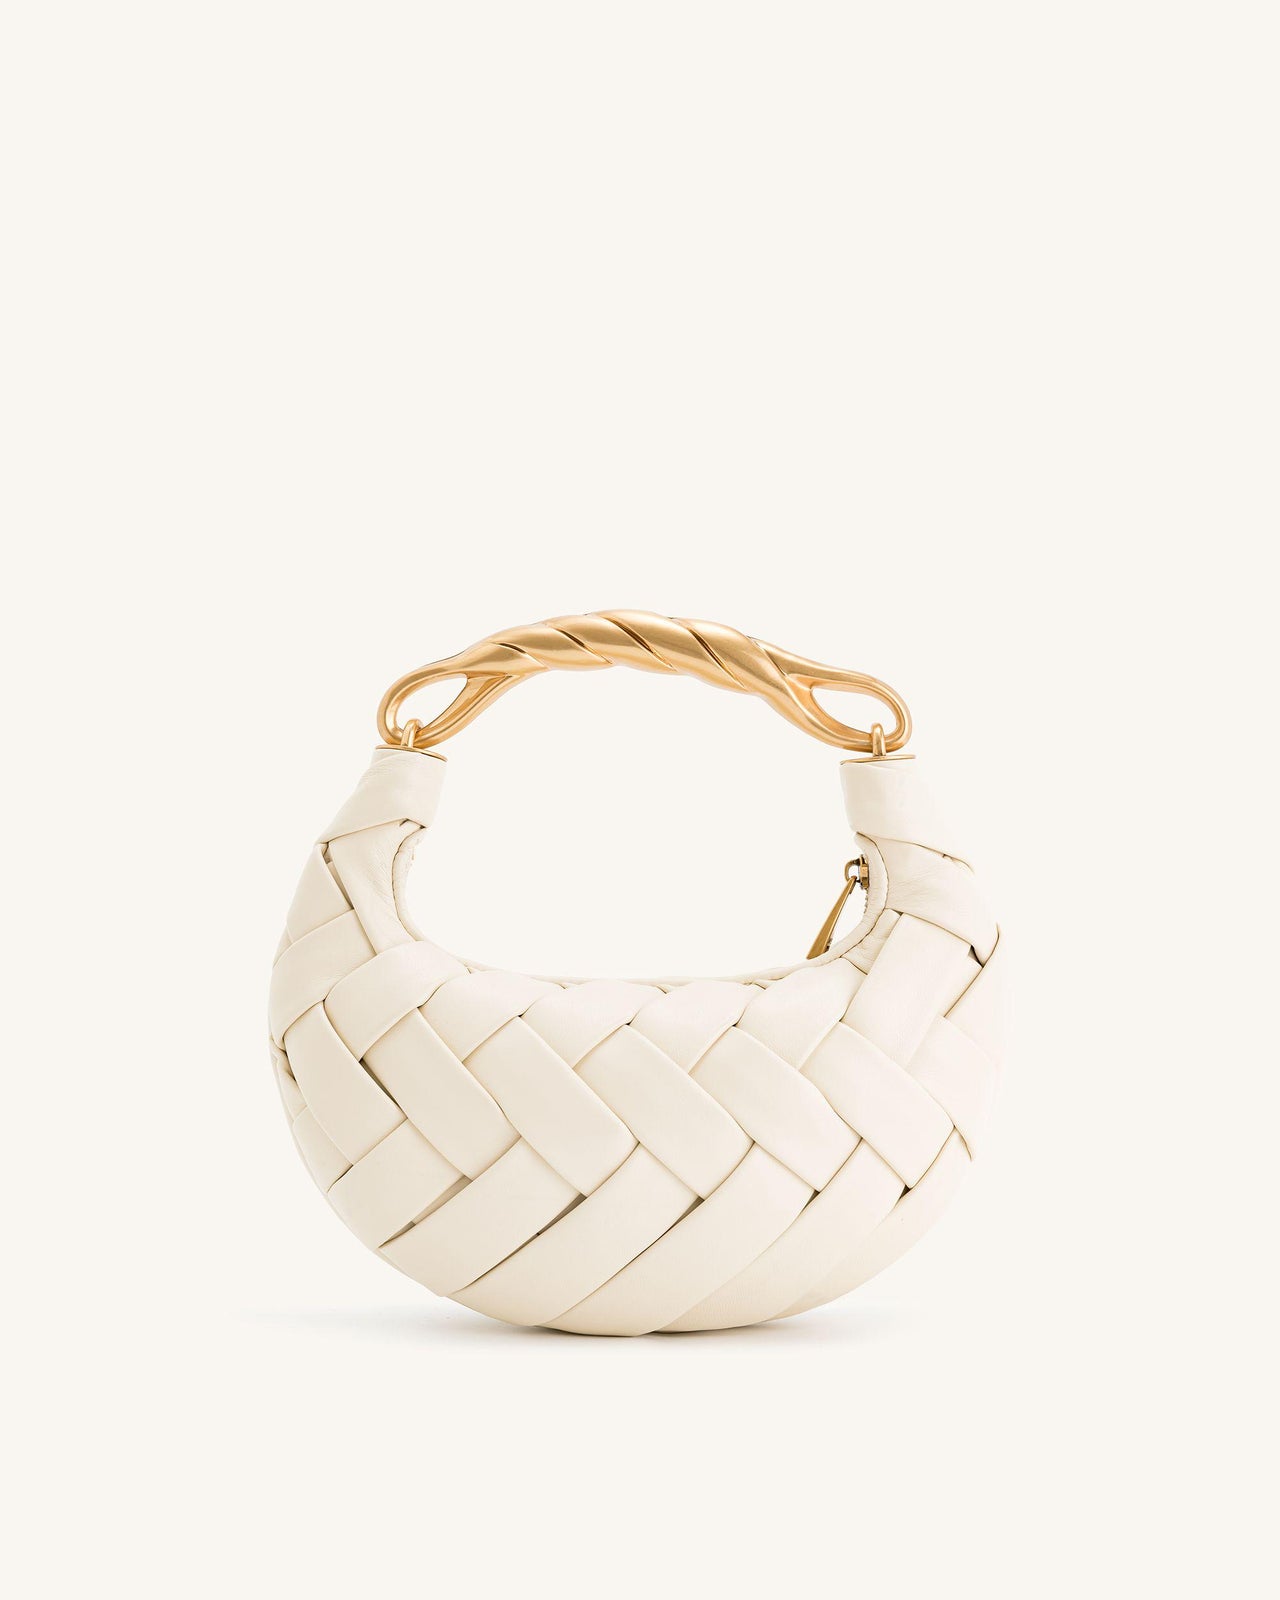 Orla Weave Handbag - White